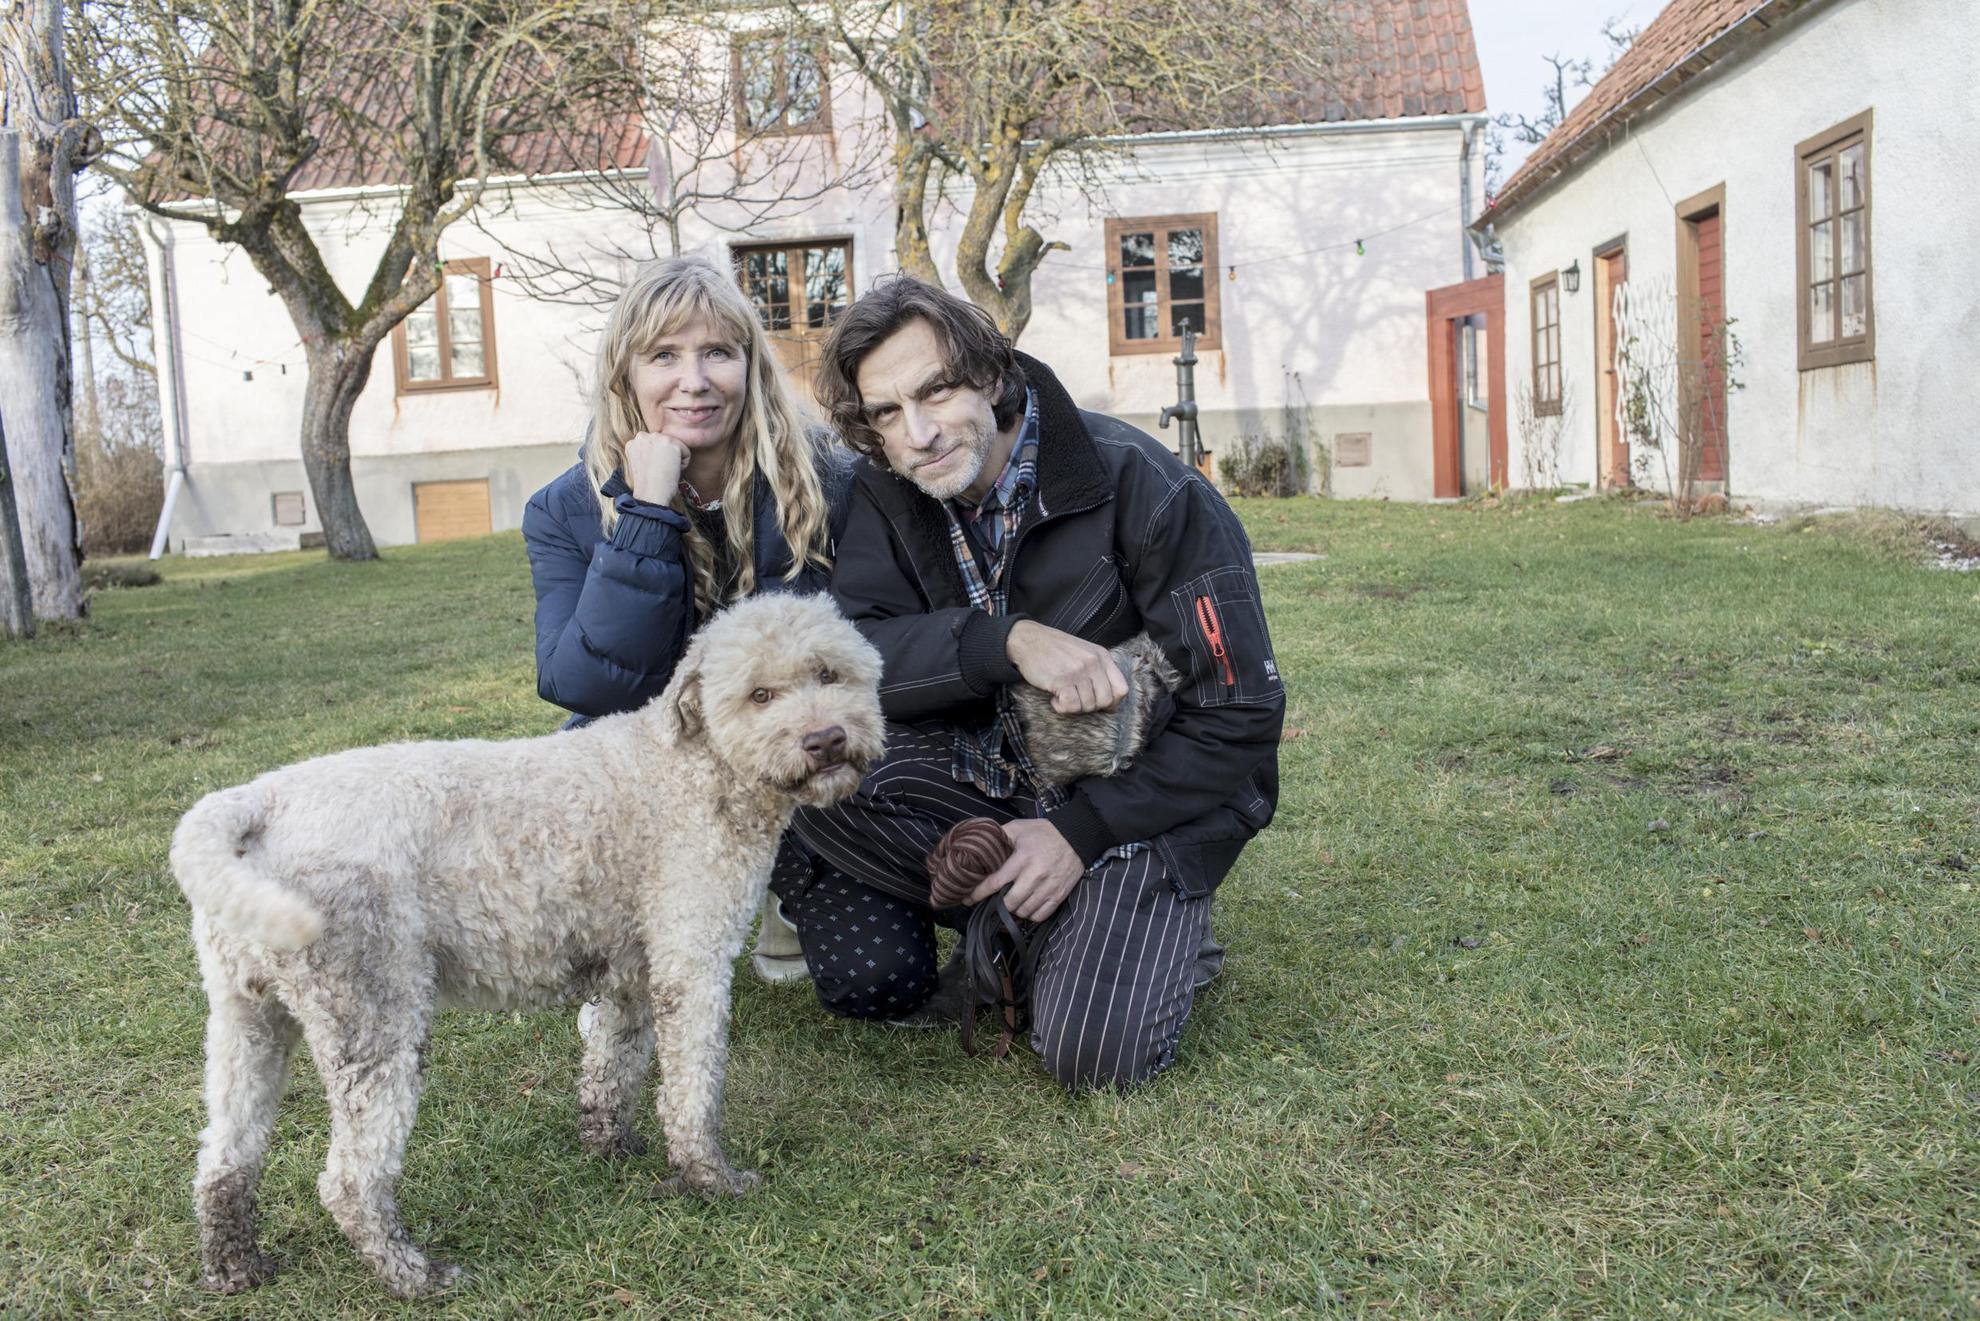 Voor een wit landhuis staan de kunstenaars Karin Mamma Andersson en Jockum Nordström en een hond.